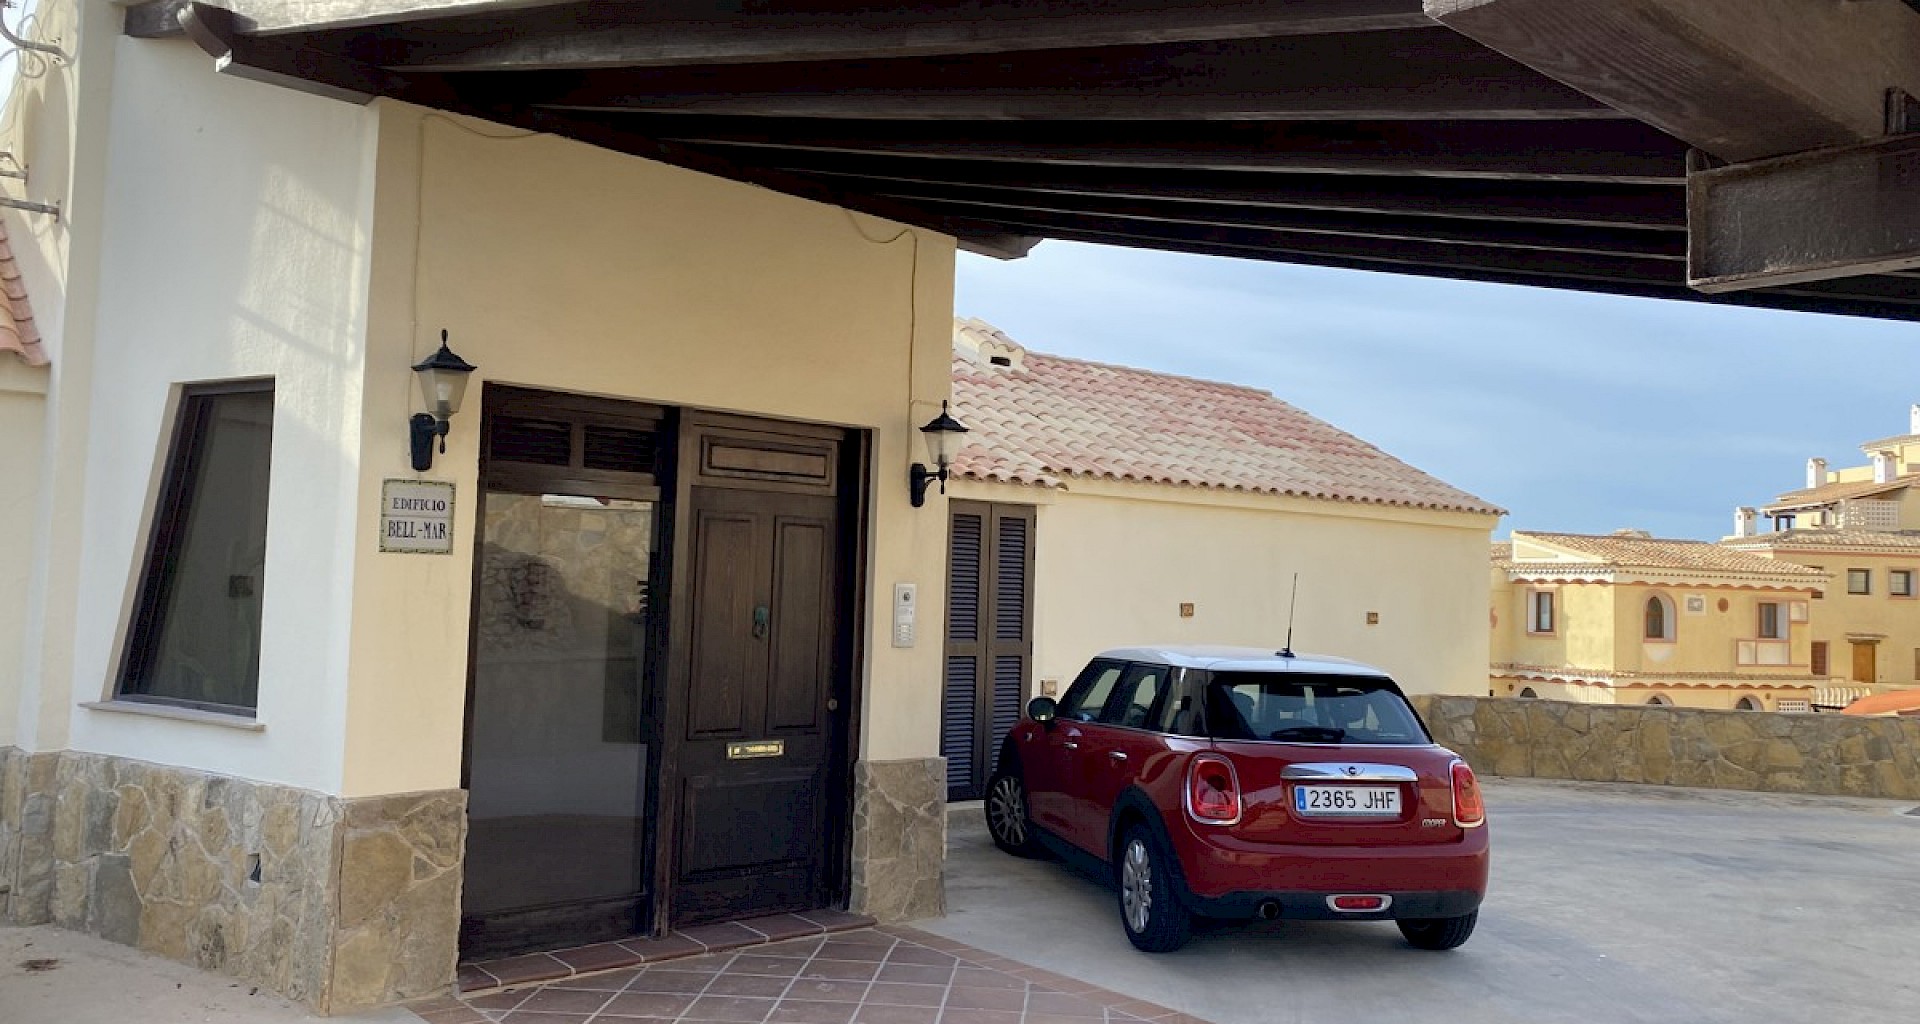 KROHN & LUEDEMANN Wohnung in erster Meereslinie in Santa Ponsa kaufen zum Fertigstellen 